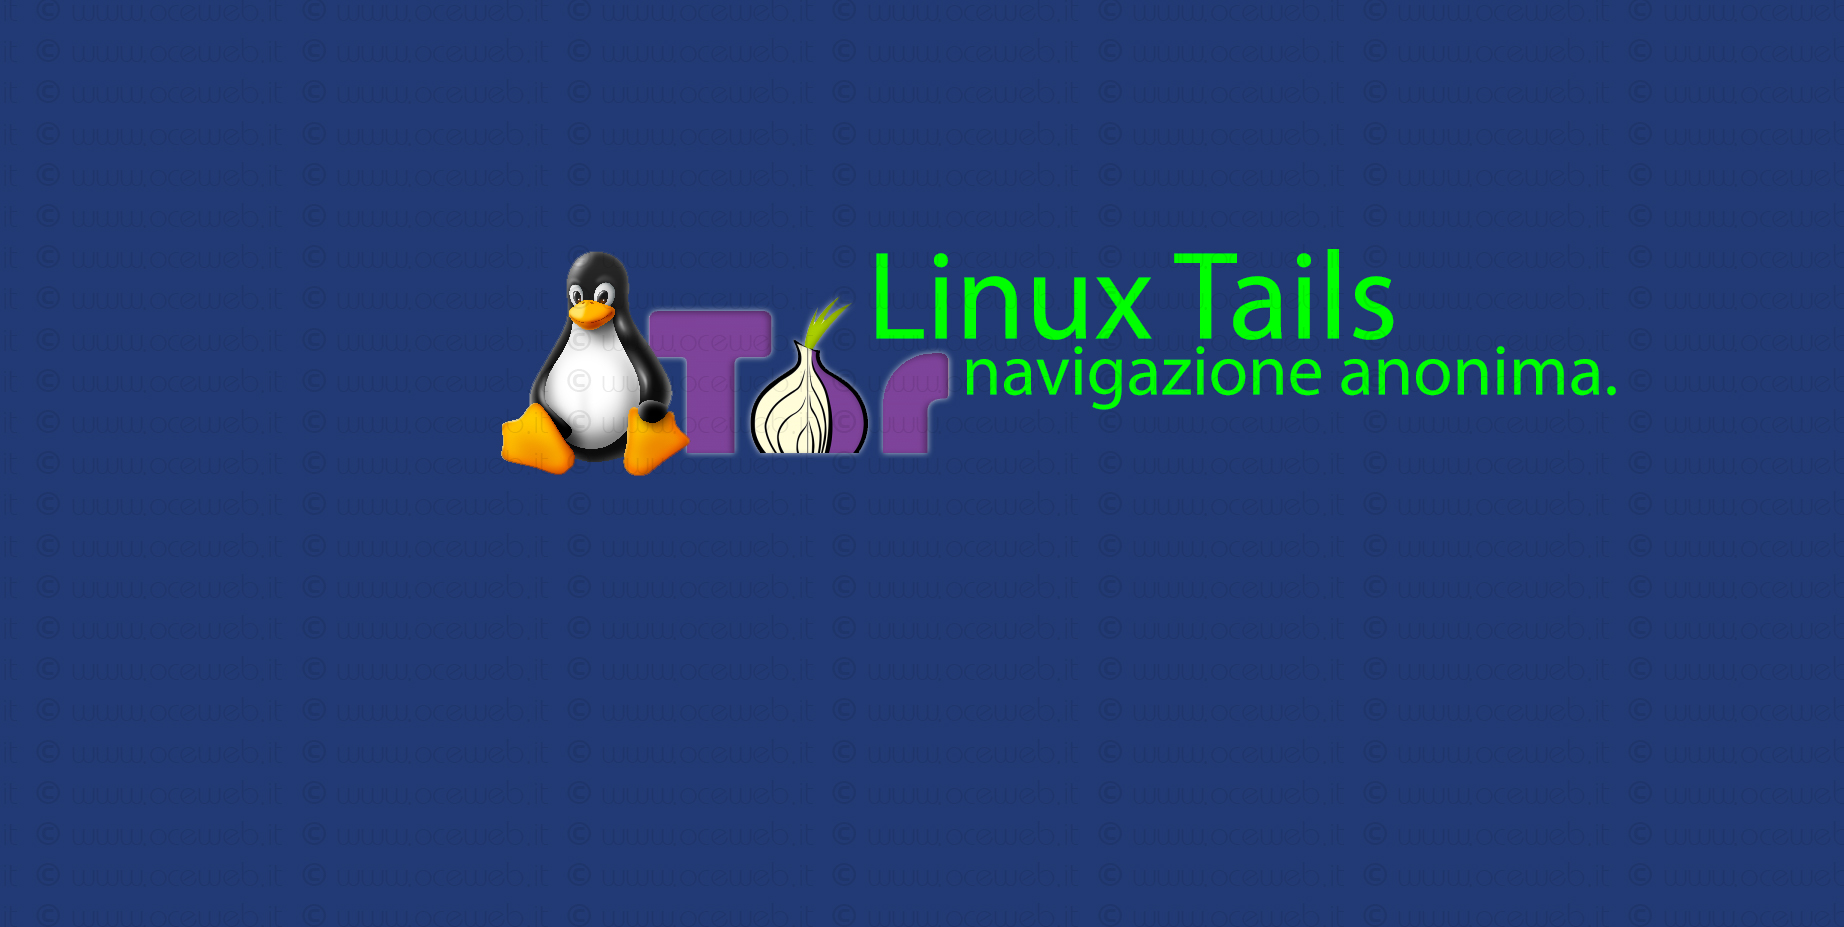 Come navigare in completo anonimato con Linux